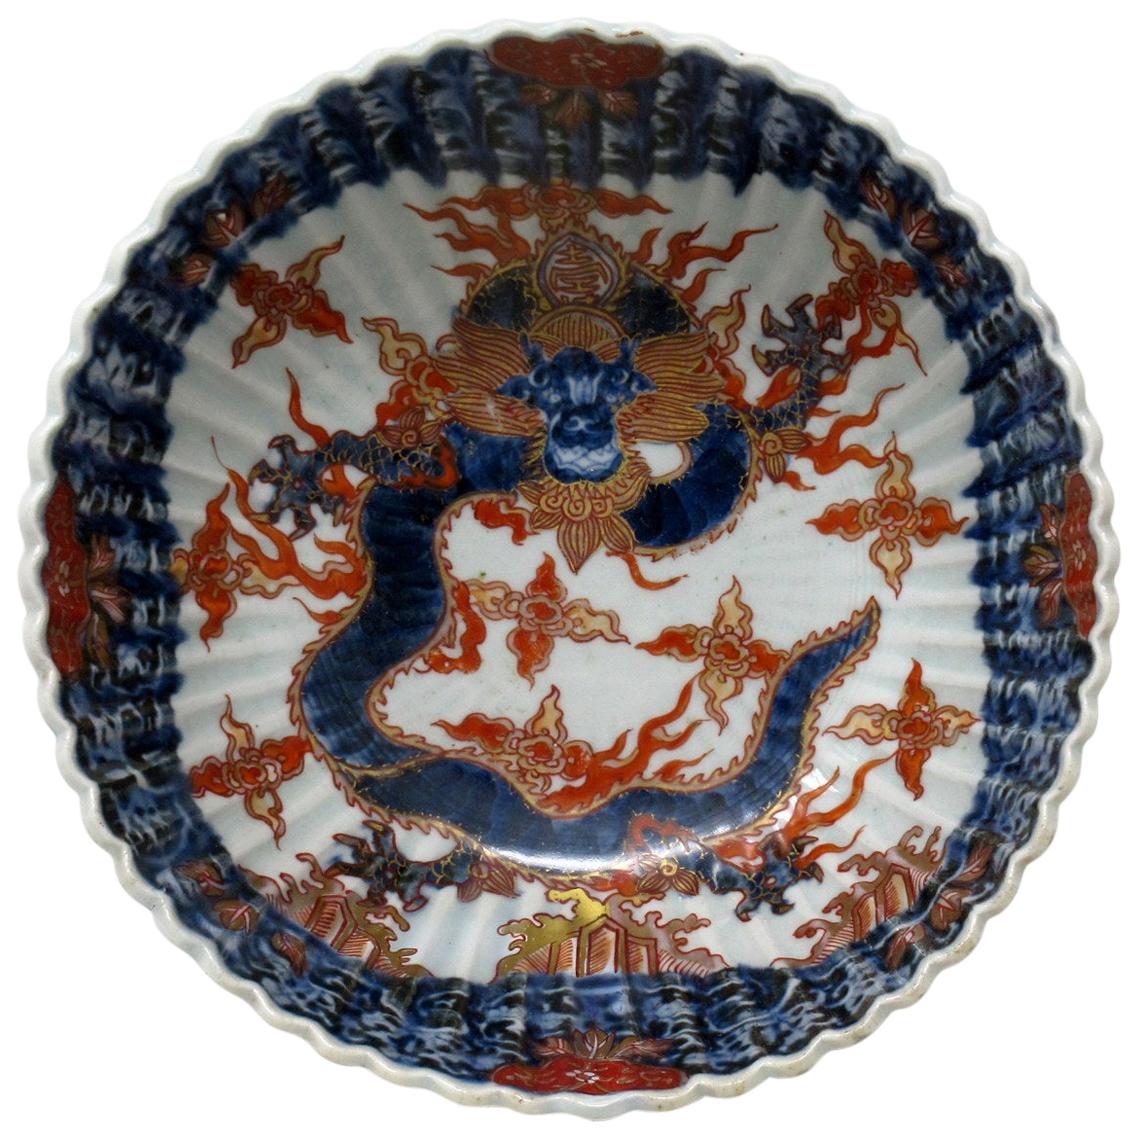 Antique Japanese Imari Porcelain Bowl Centerpiece Fukazawa Koransha Meiji Period